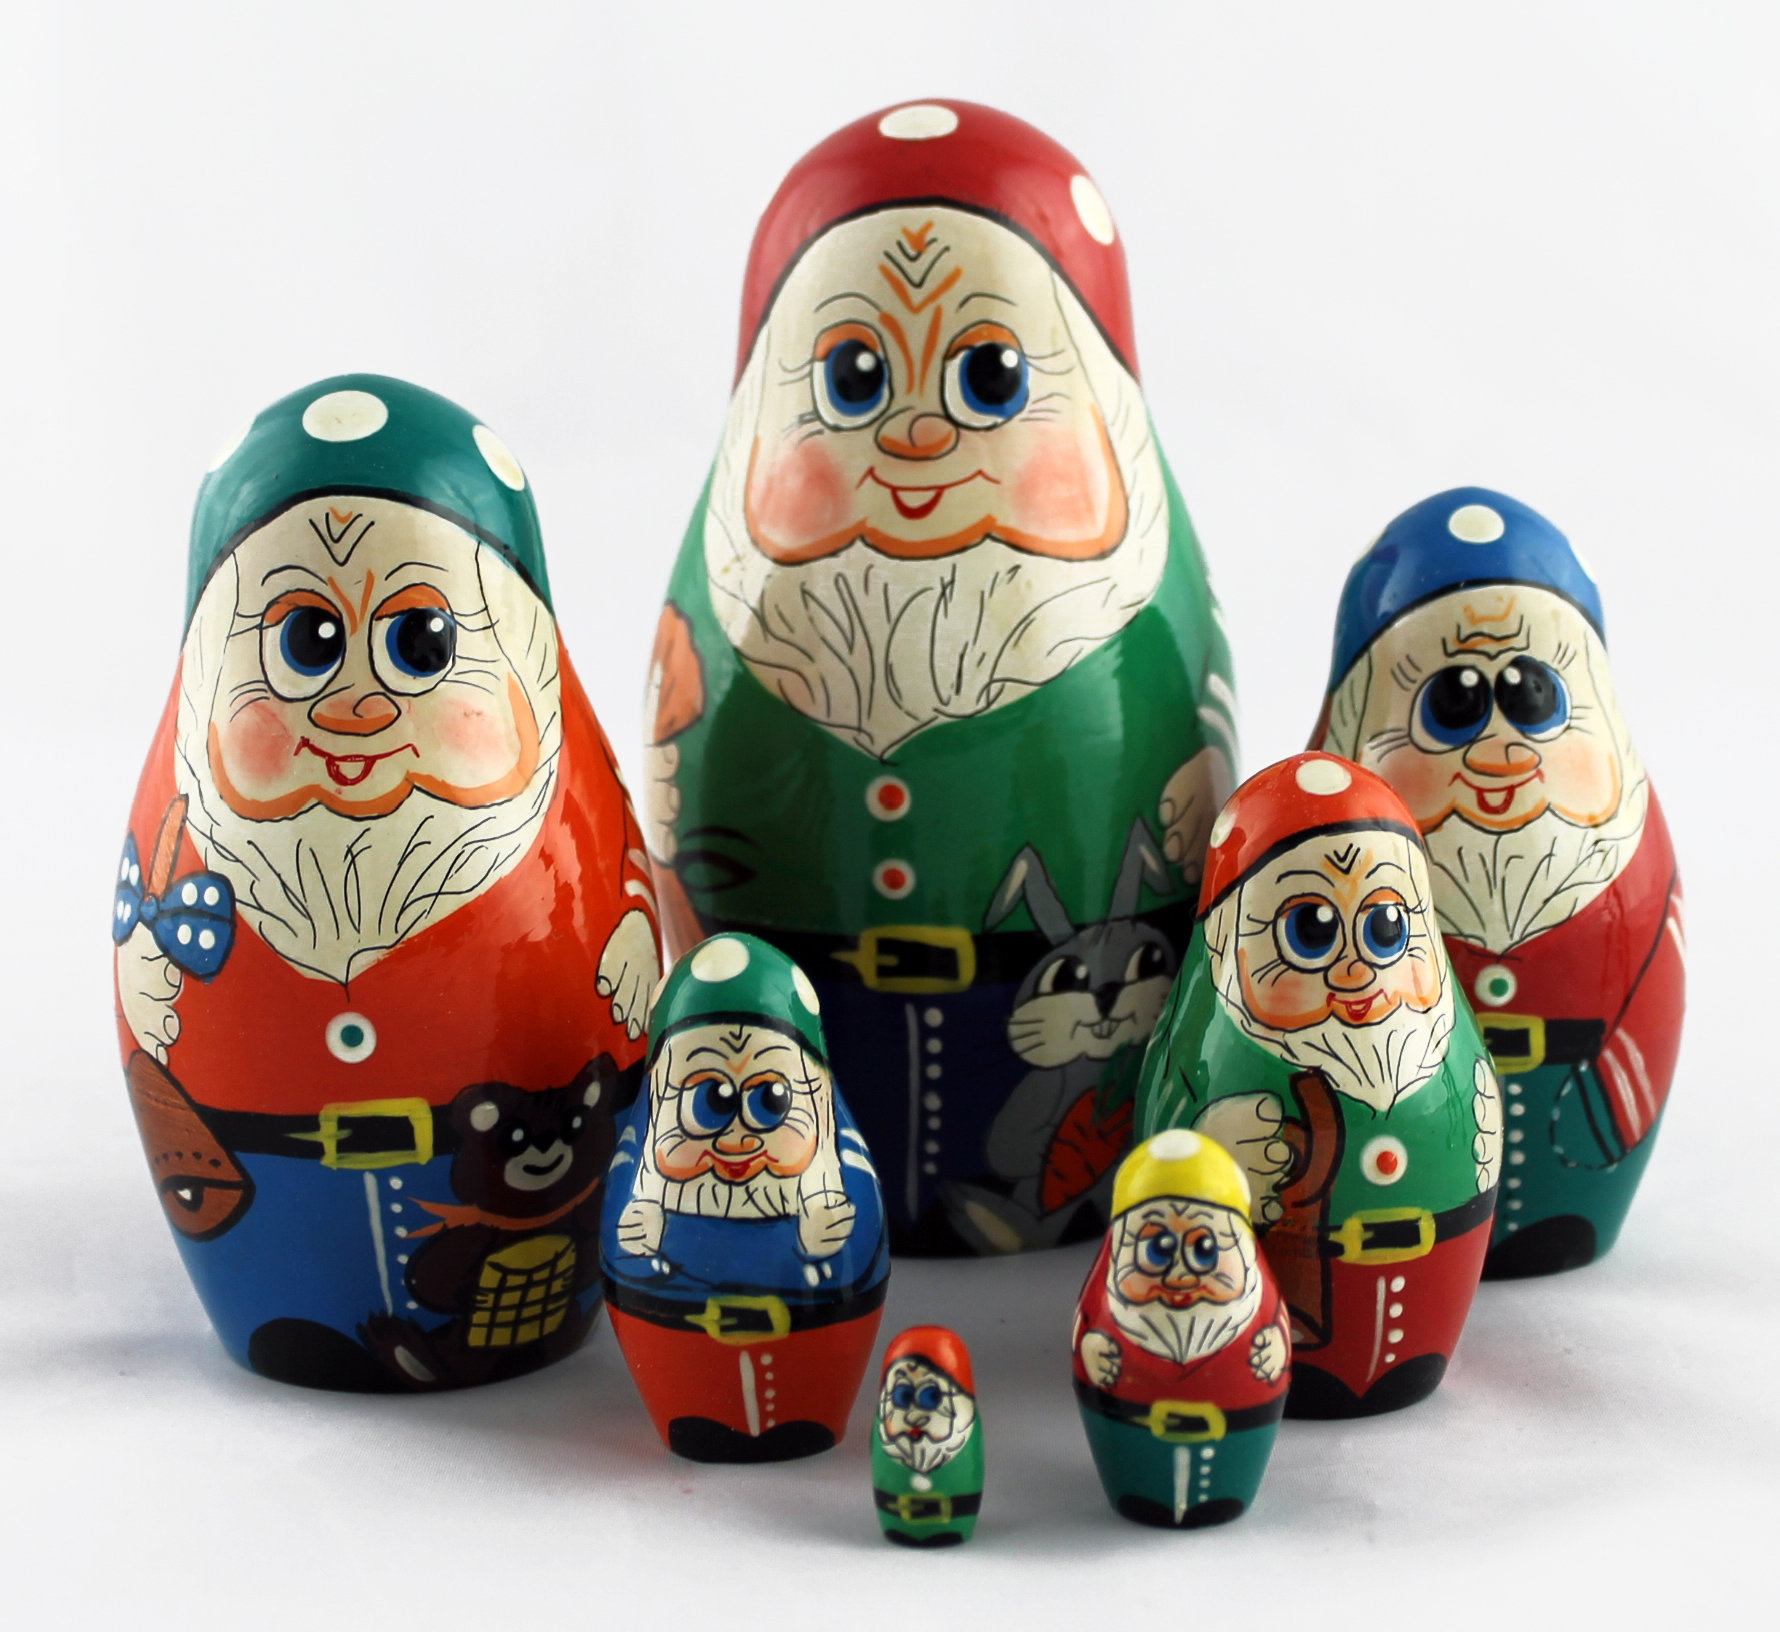 Dwarfs Gnomes Matryoshka Russian Nesting Dolls Matrioska Babushka Wooden 7 Pcs 